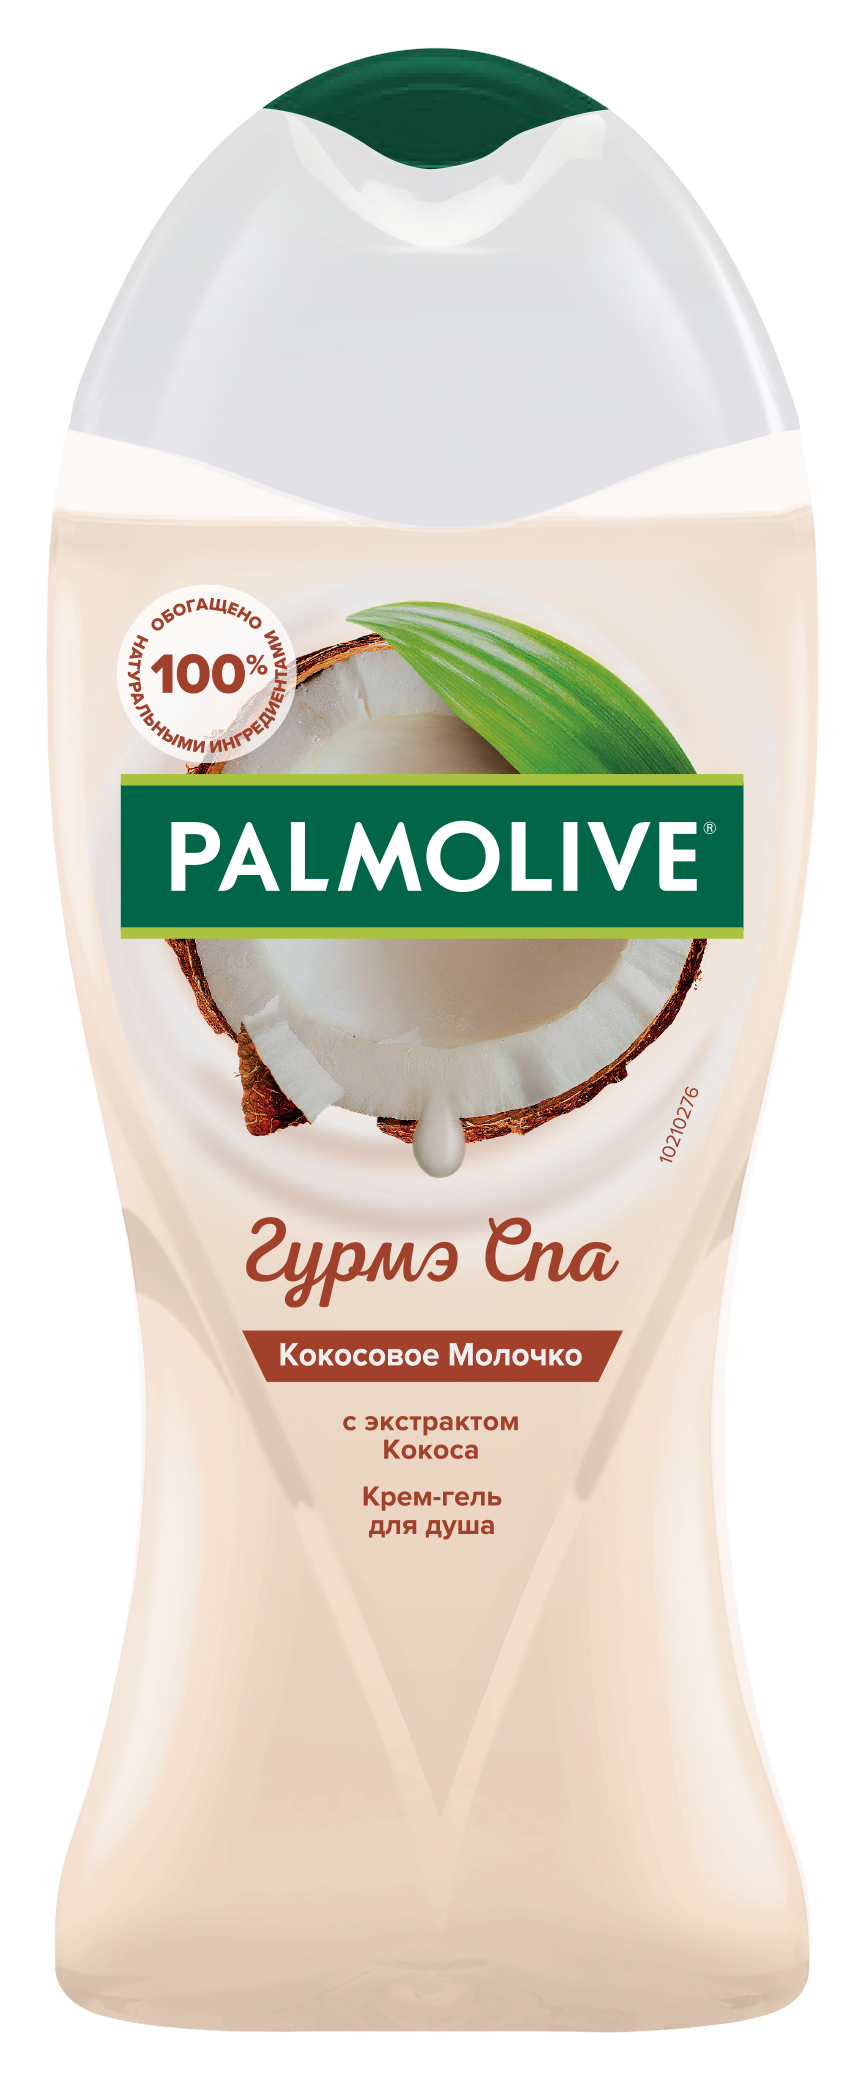 Крем-гель для душа Palmolive Гурмэ СПА кокосовое молочко, с экстрактом кокоса, 250 мл aromako свеча миндаль и кокосовое молочко 100